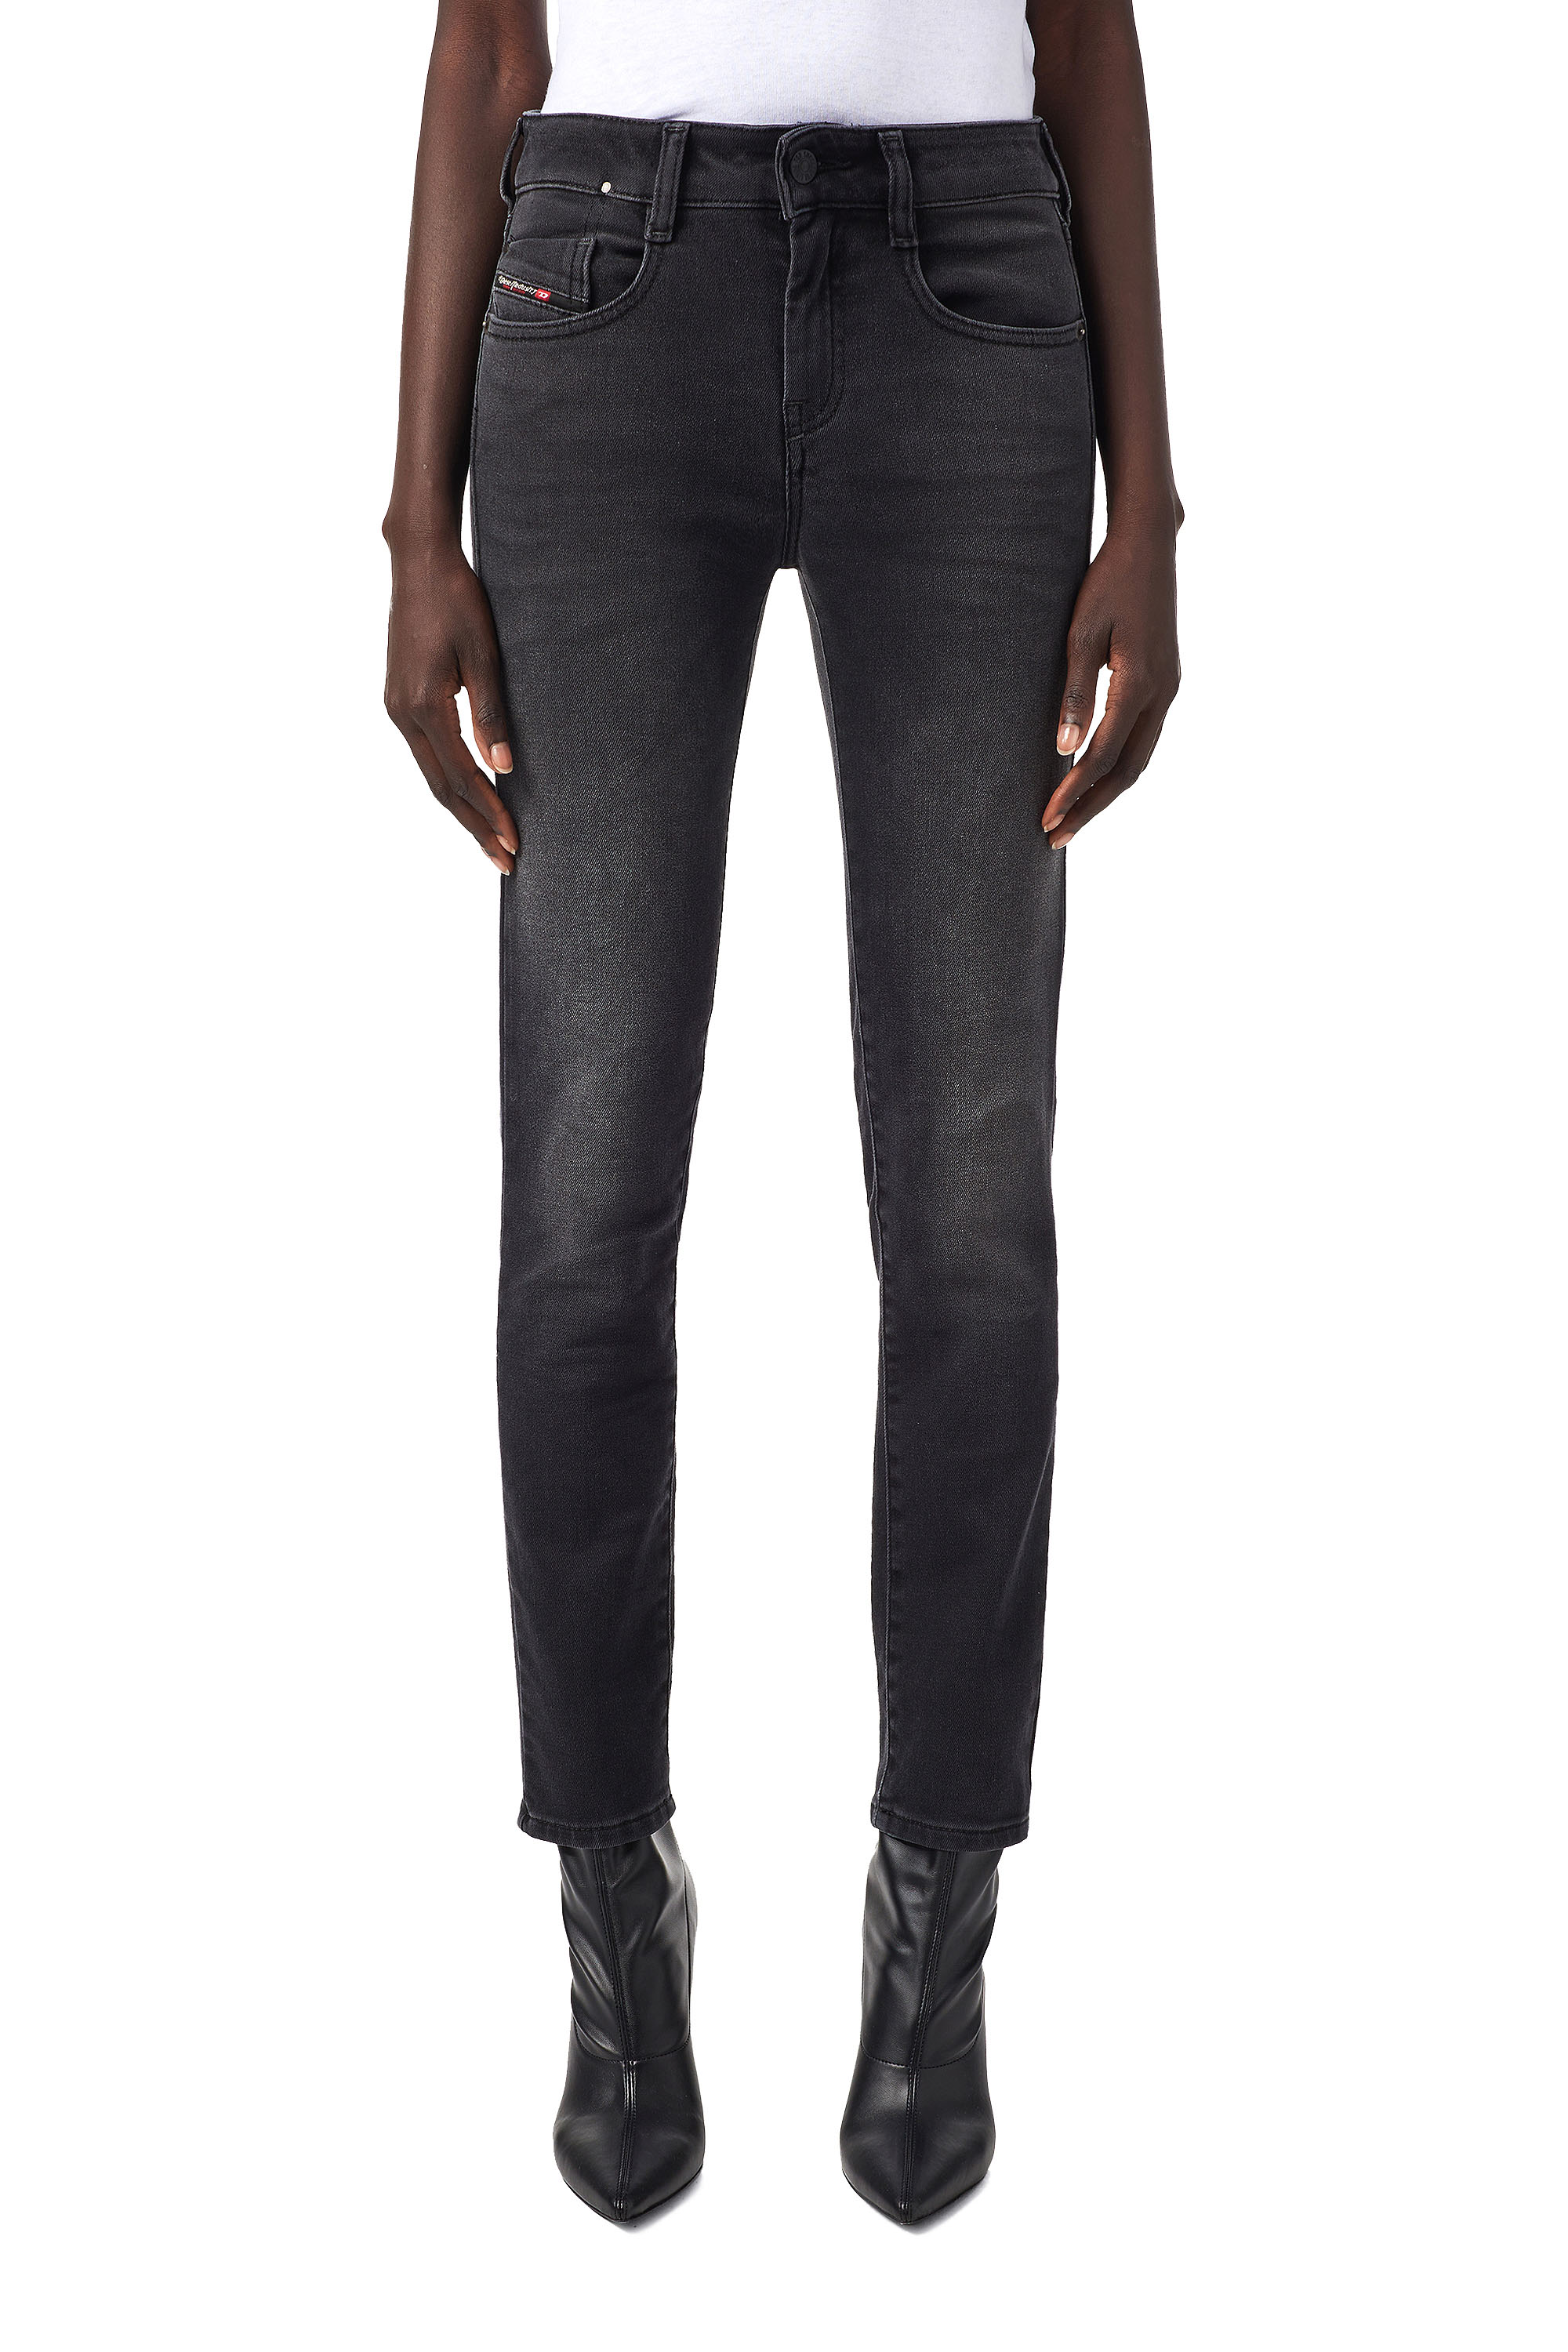 Diesel - D-Ollies JoggJeans® 09B22 Slim, Black/Dark Grey - Image 1